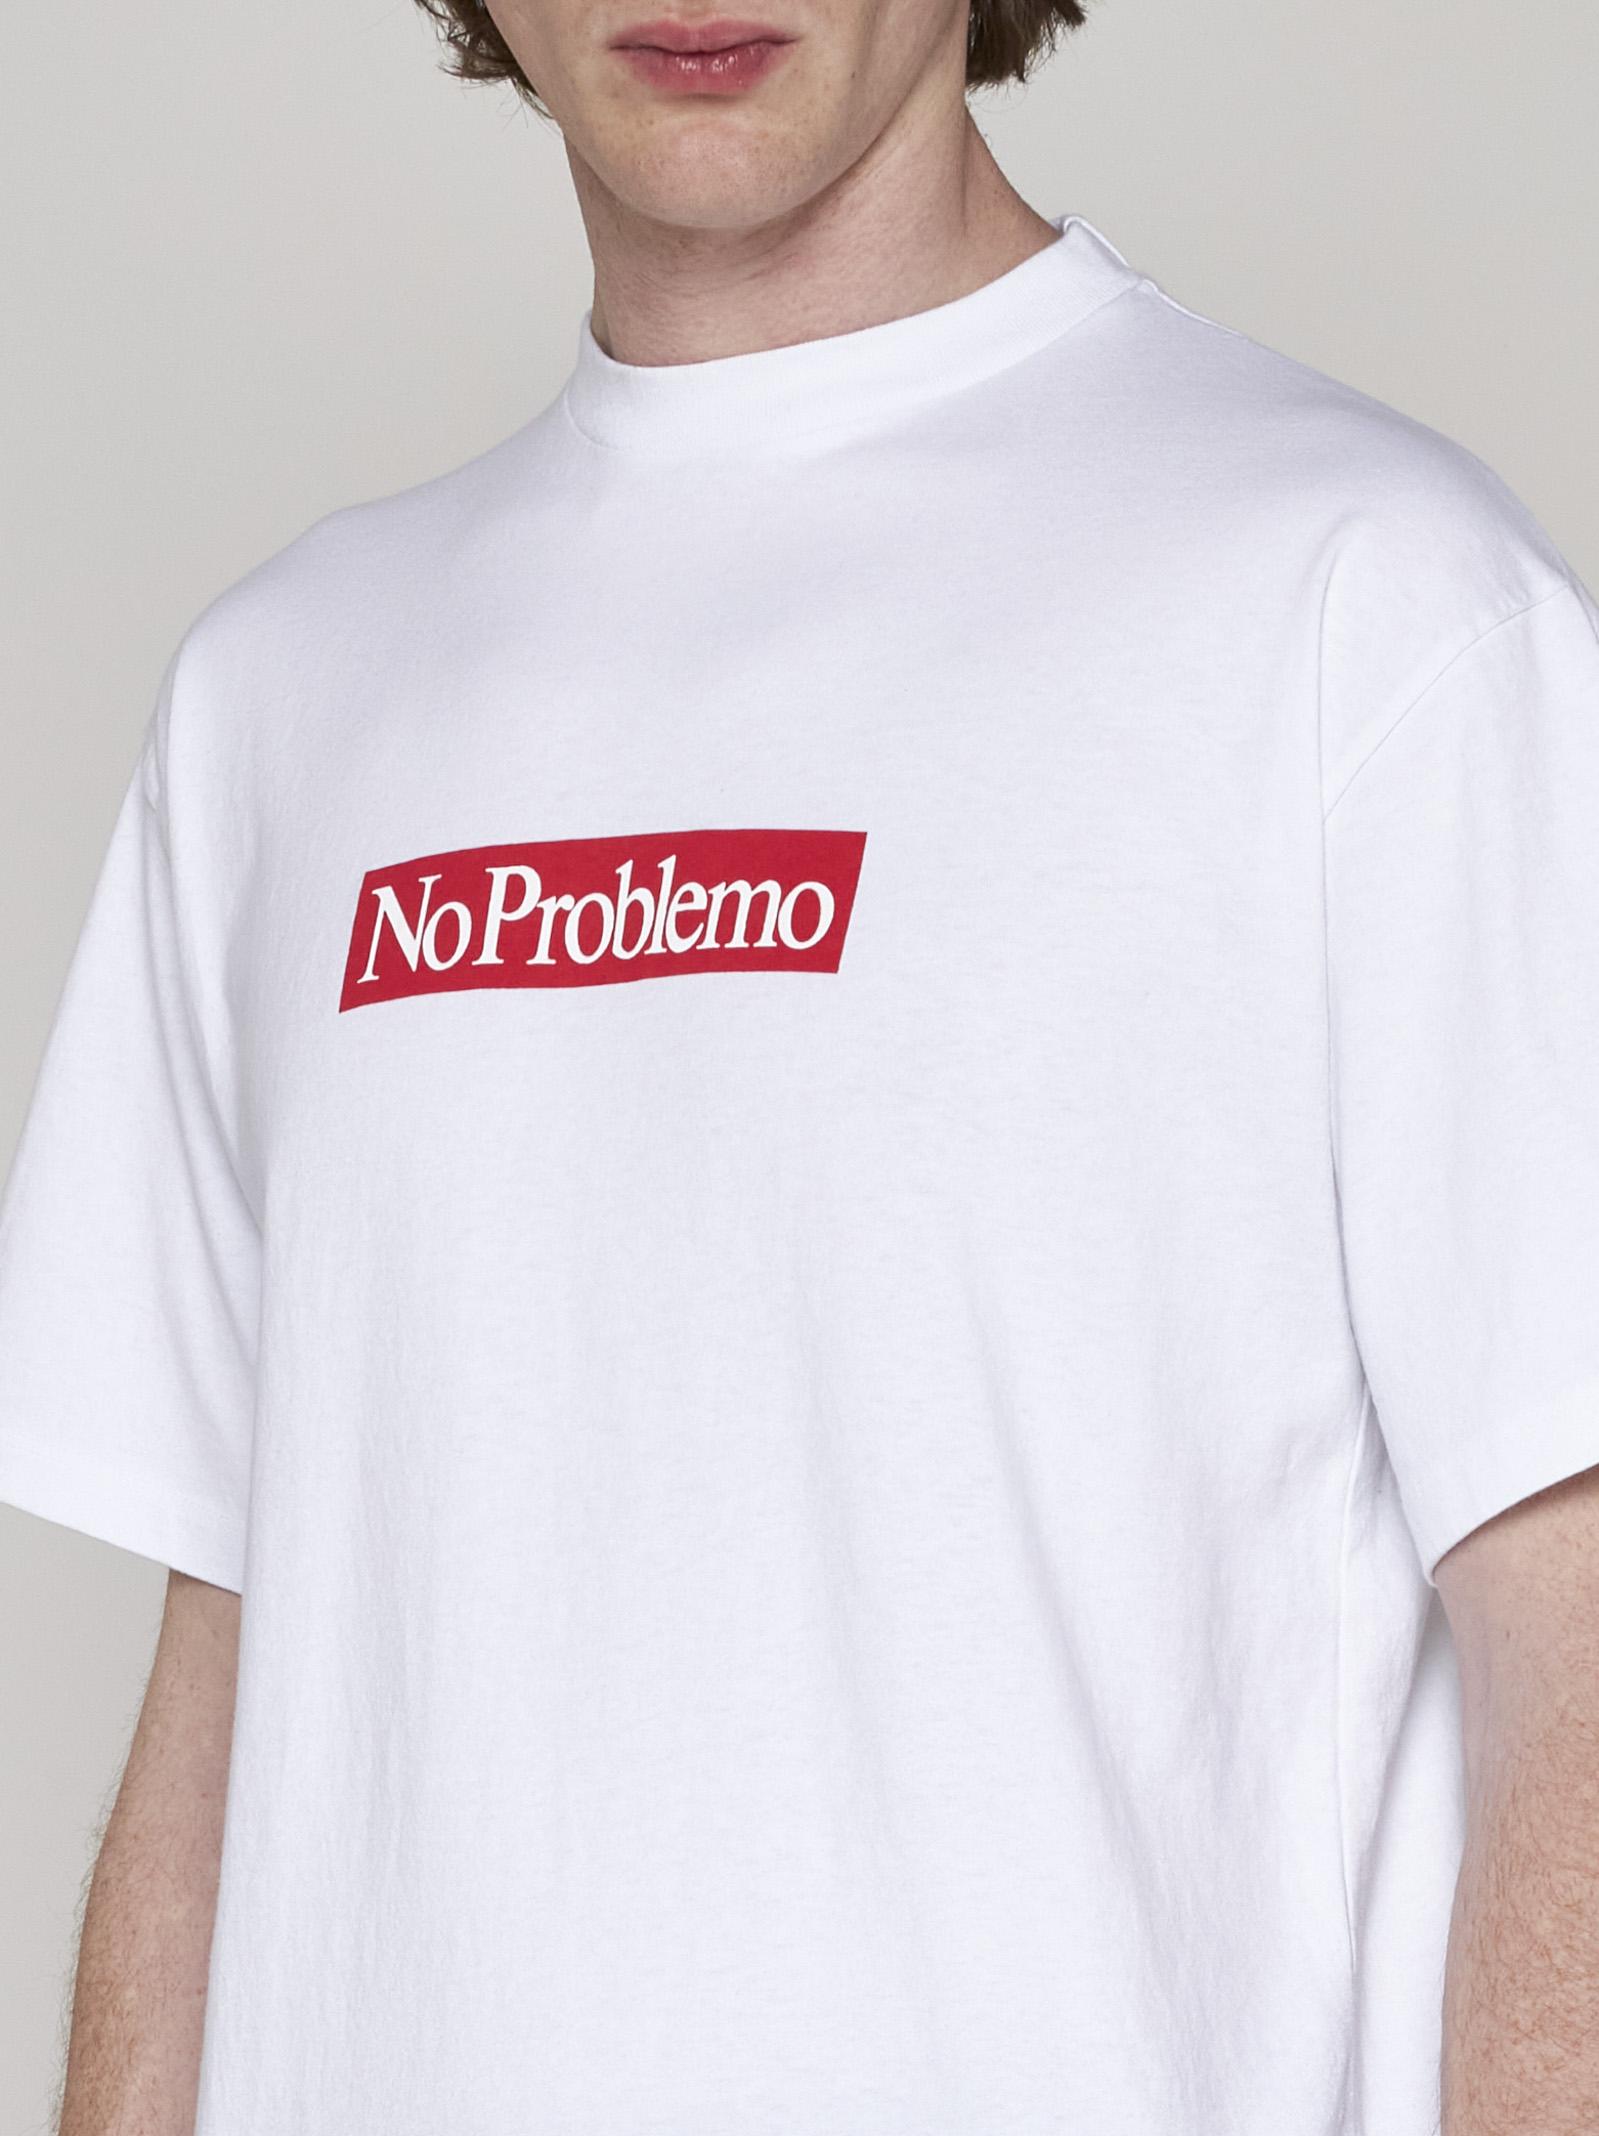 Aries Problemo Supremo Cotton T-shirt in White for Men